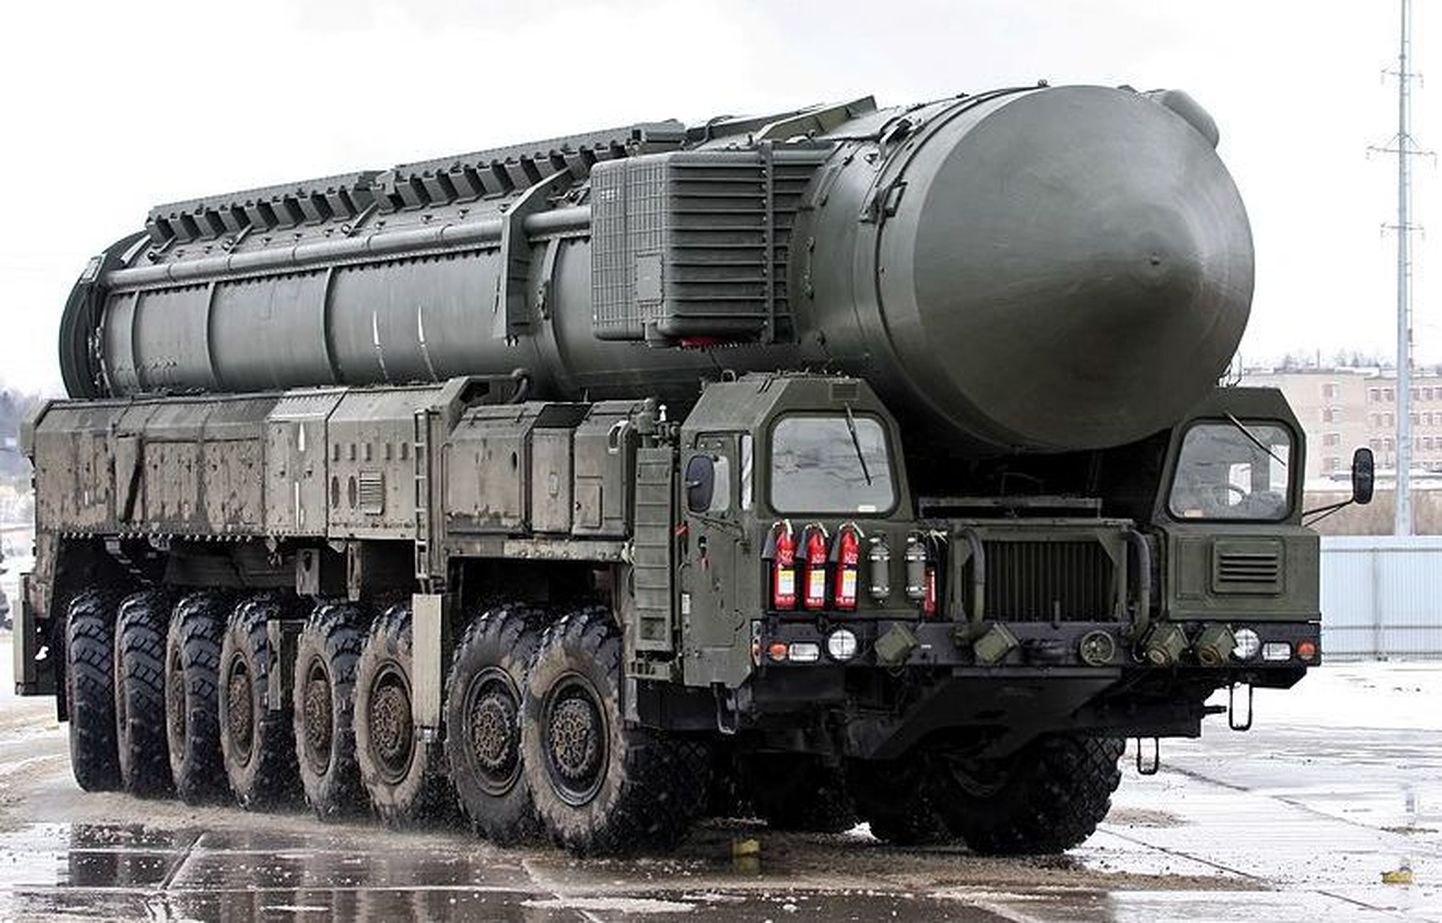 Venemaa Topol-M rakett, mille puhul NATO kasutab klassifikatsiooni SS-27 Sickle B